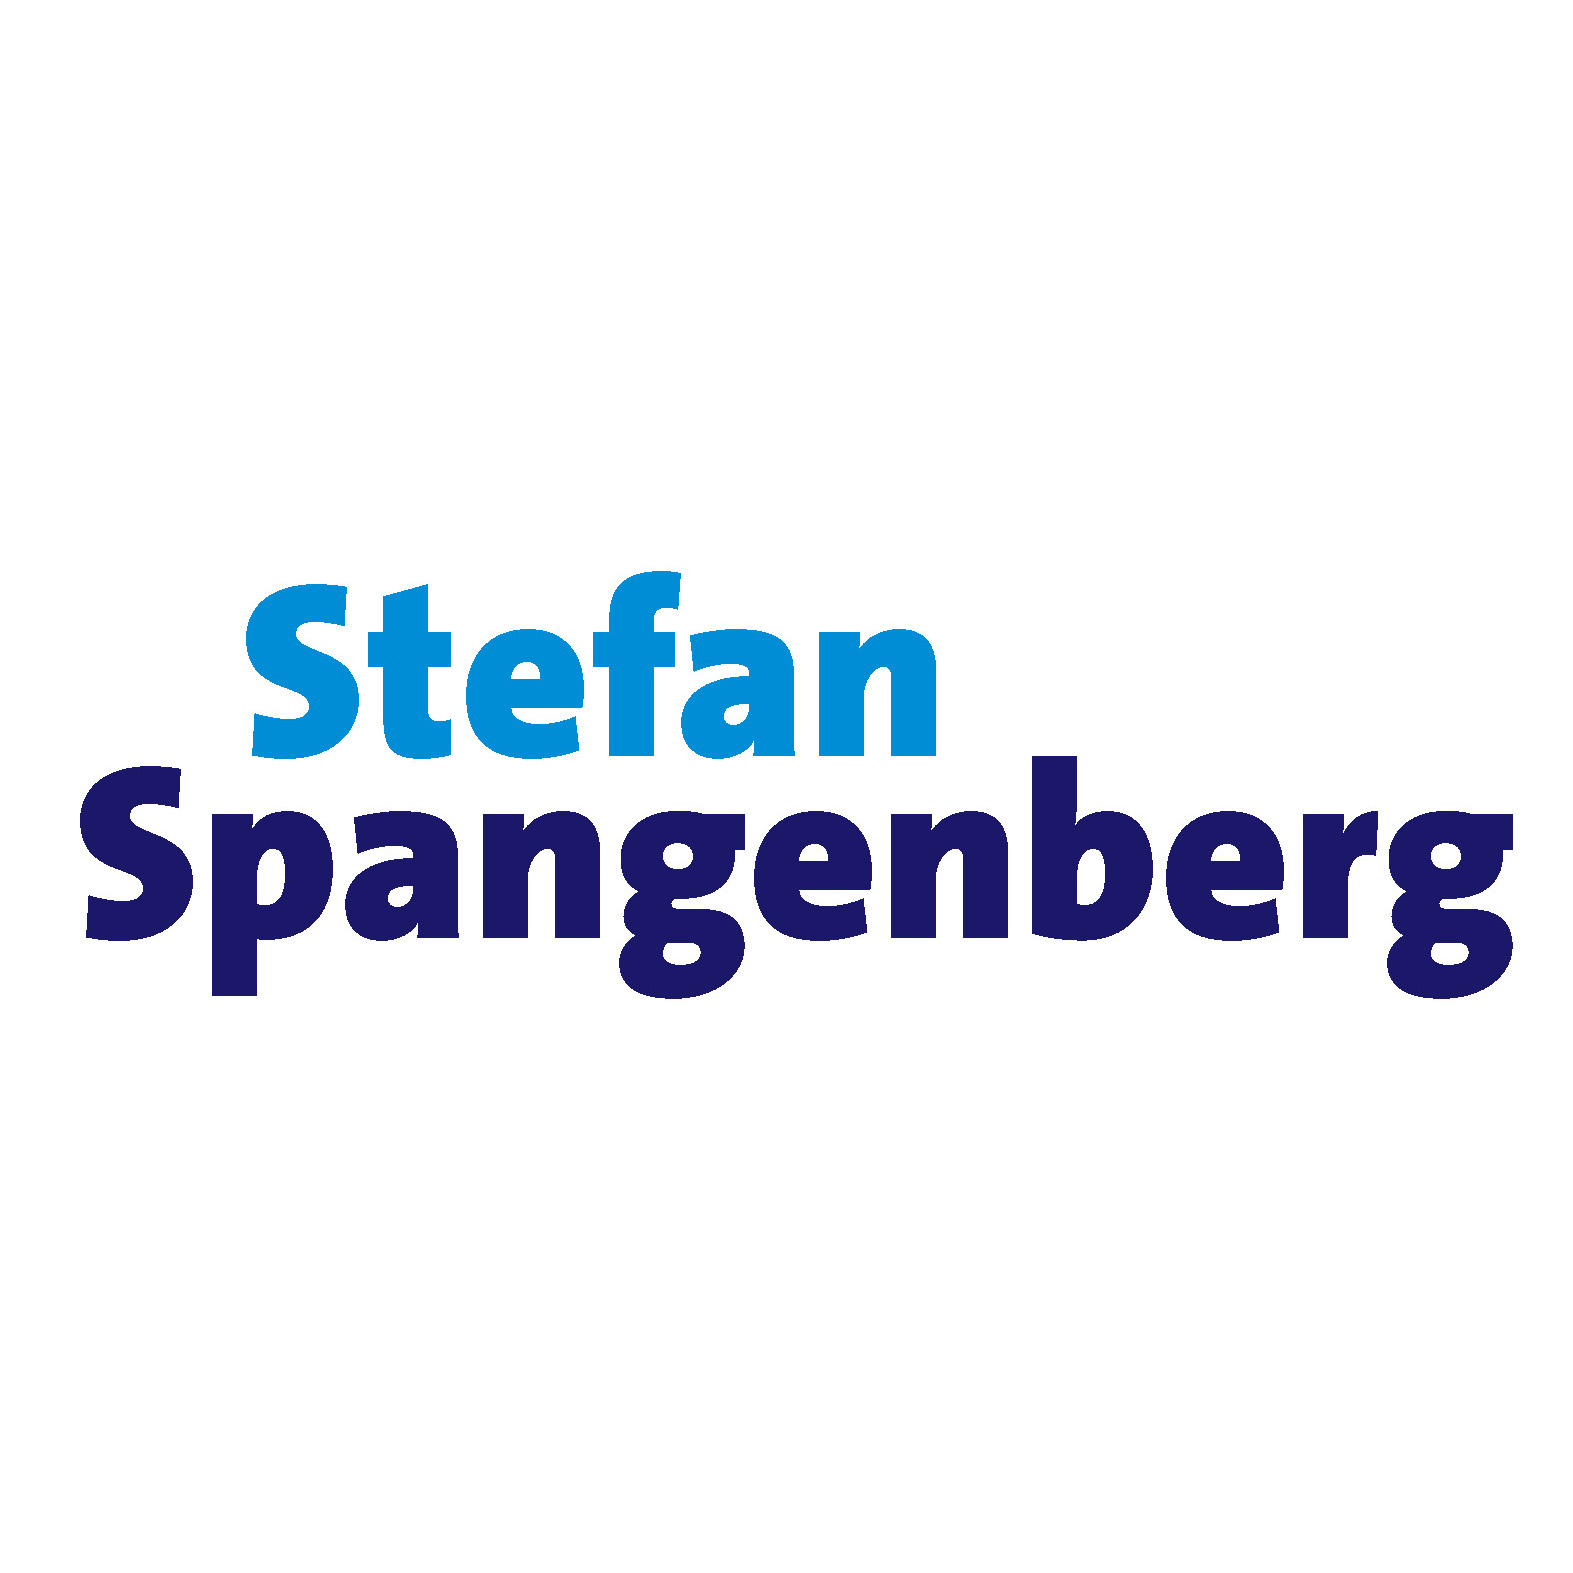 Stefan Spangenberg - Reise-Referent & Vortragsredner in Ingelheim am Rhein